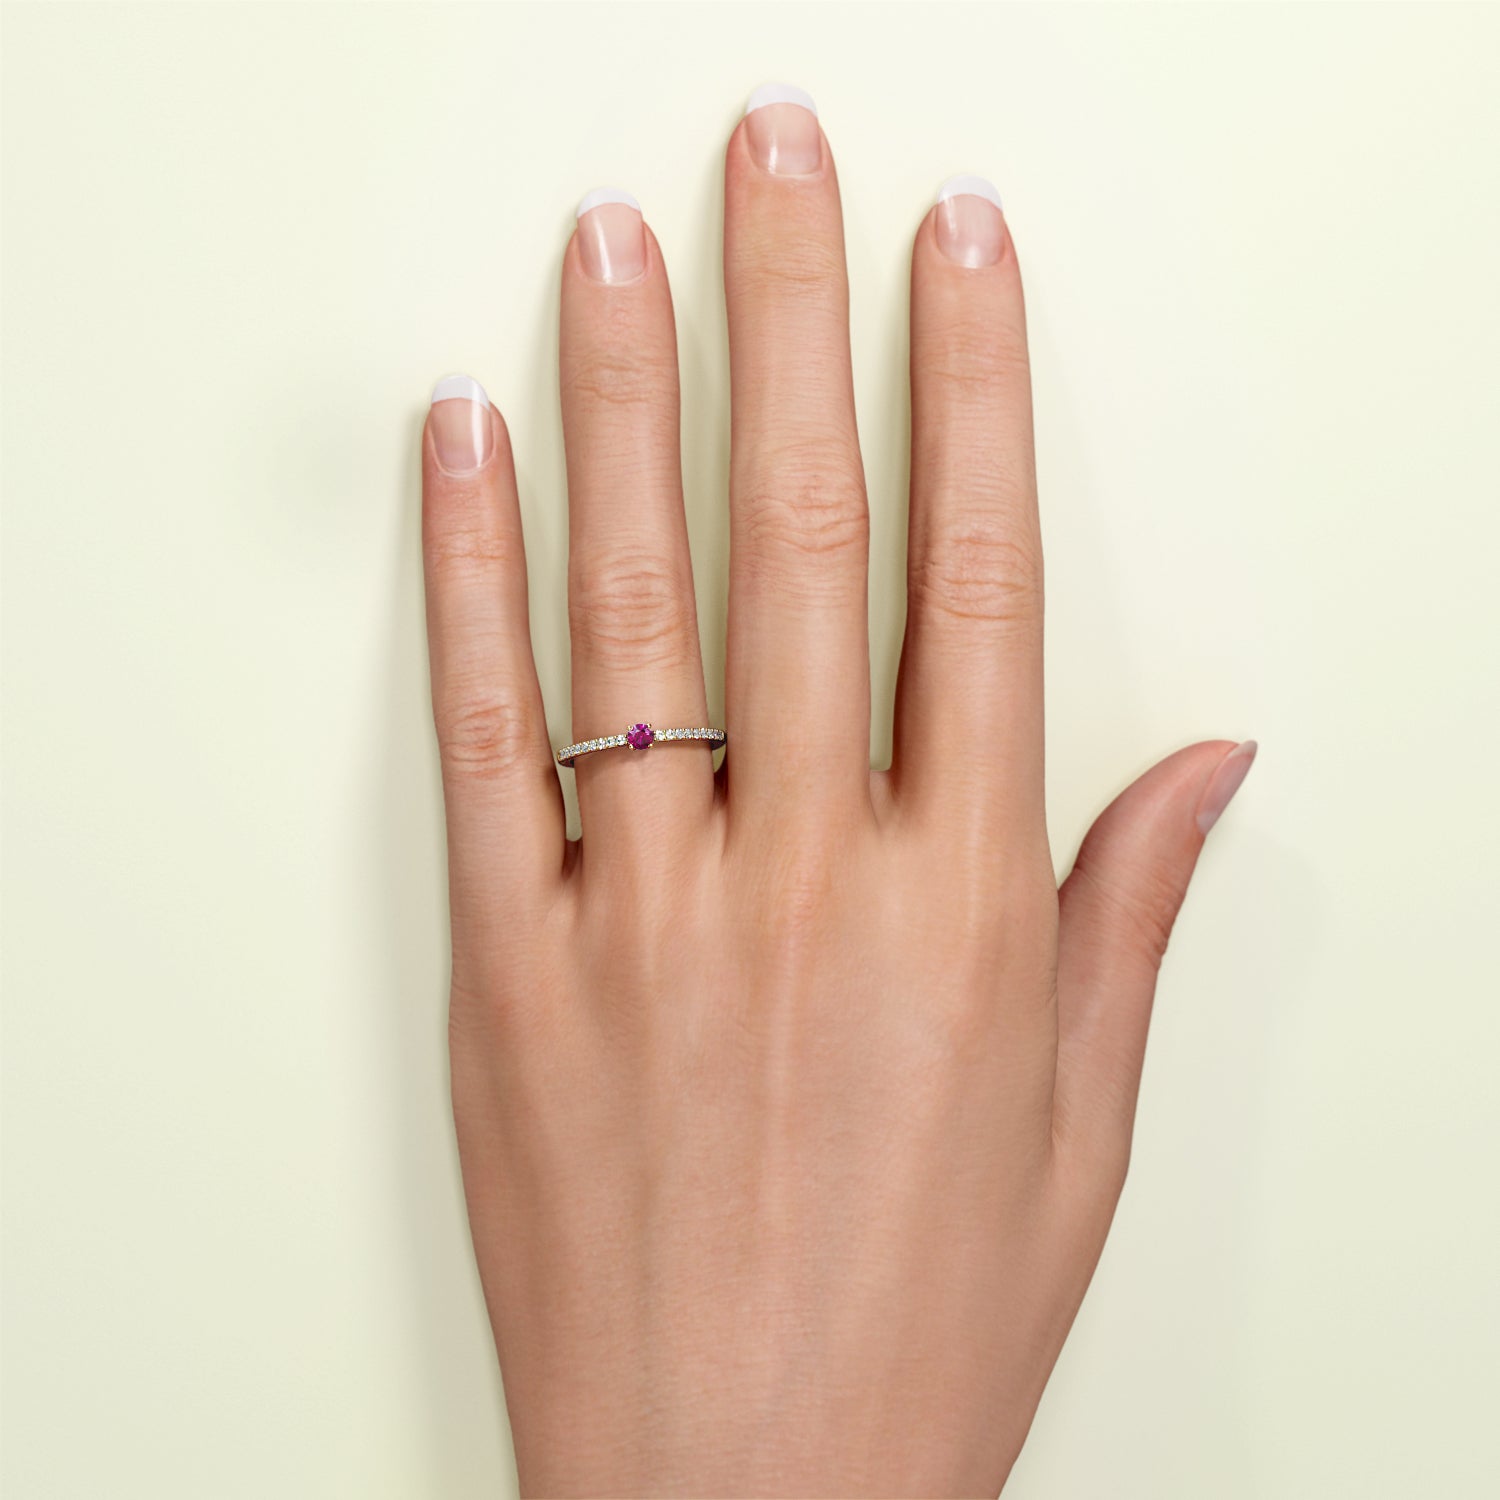 Birthstone Ring Jänner in Gelbgold mit rotem Granat und Diamanten, am Finger getragen. Von FENA daily Jewellery.